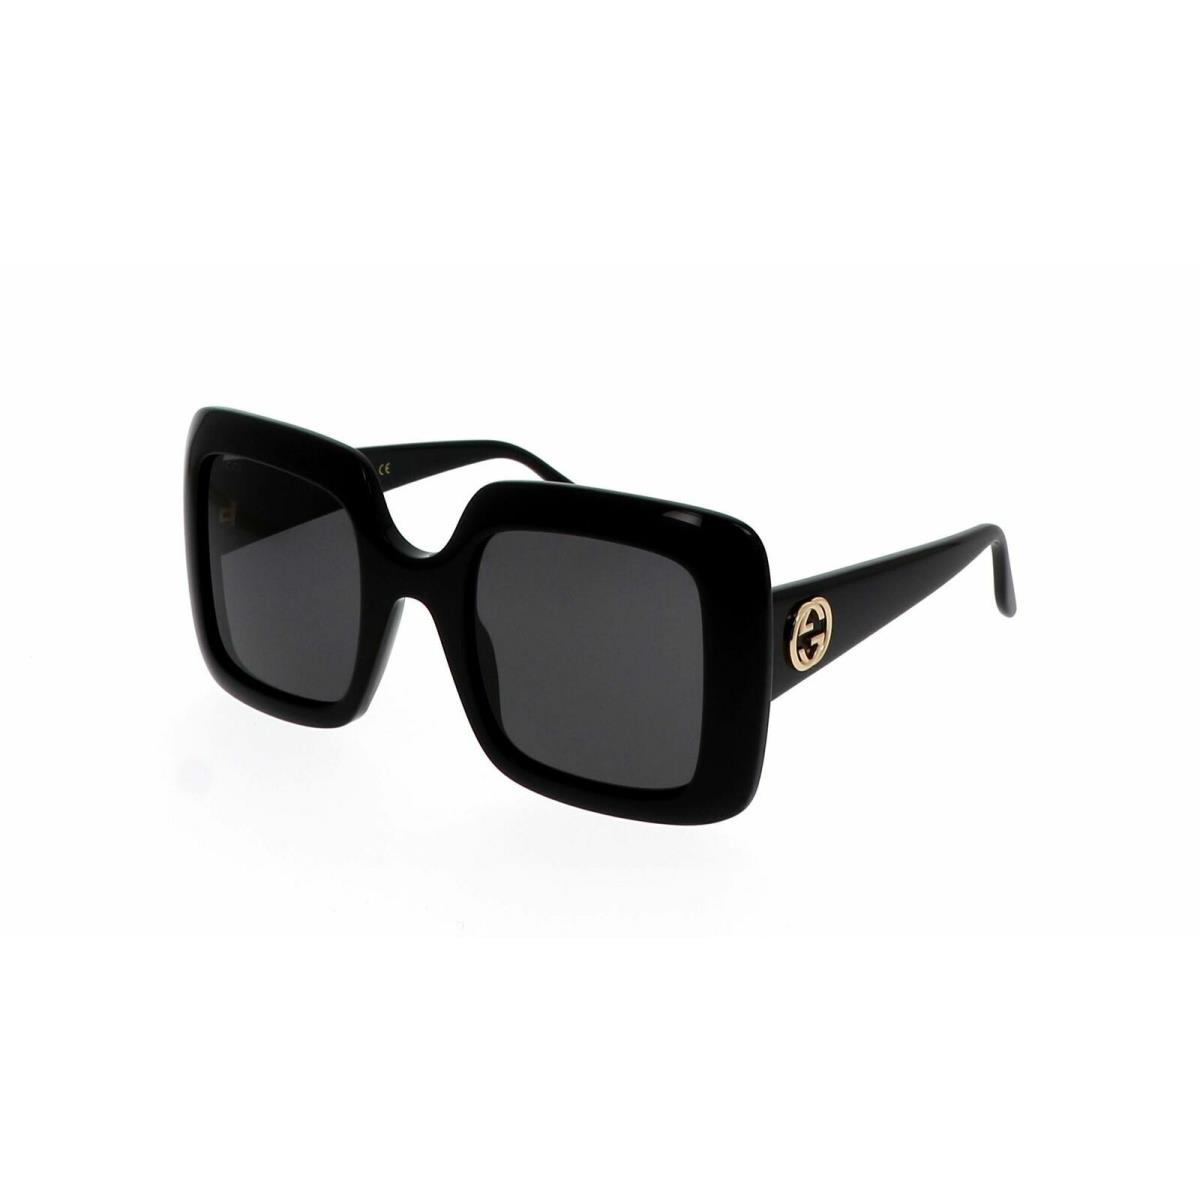 Gucci Sunglasses Gg0896s 001 Black Gray Woman